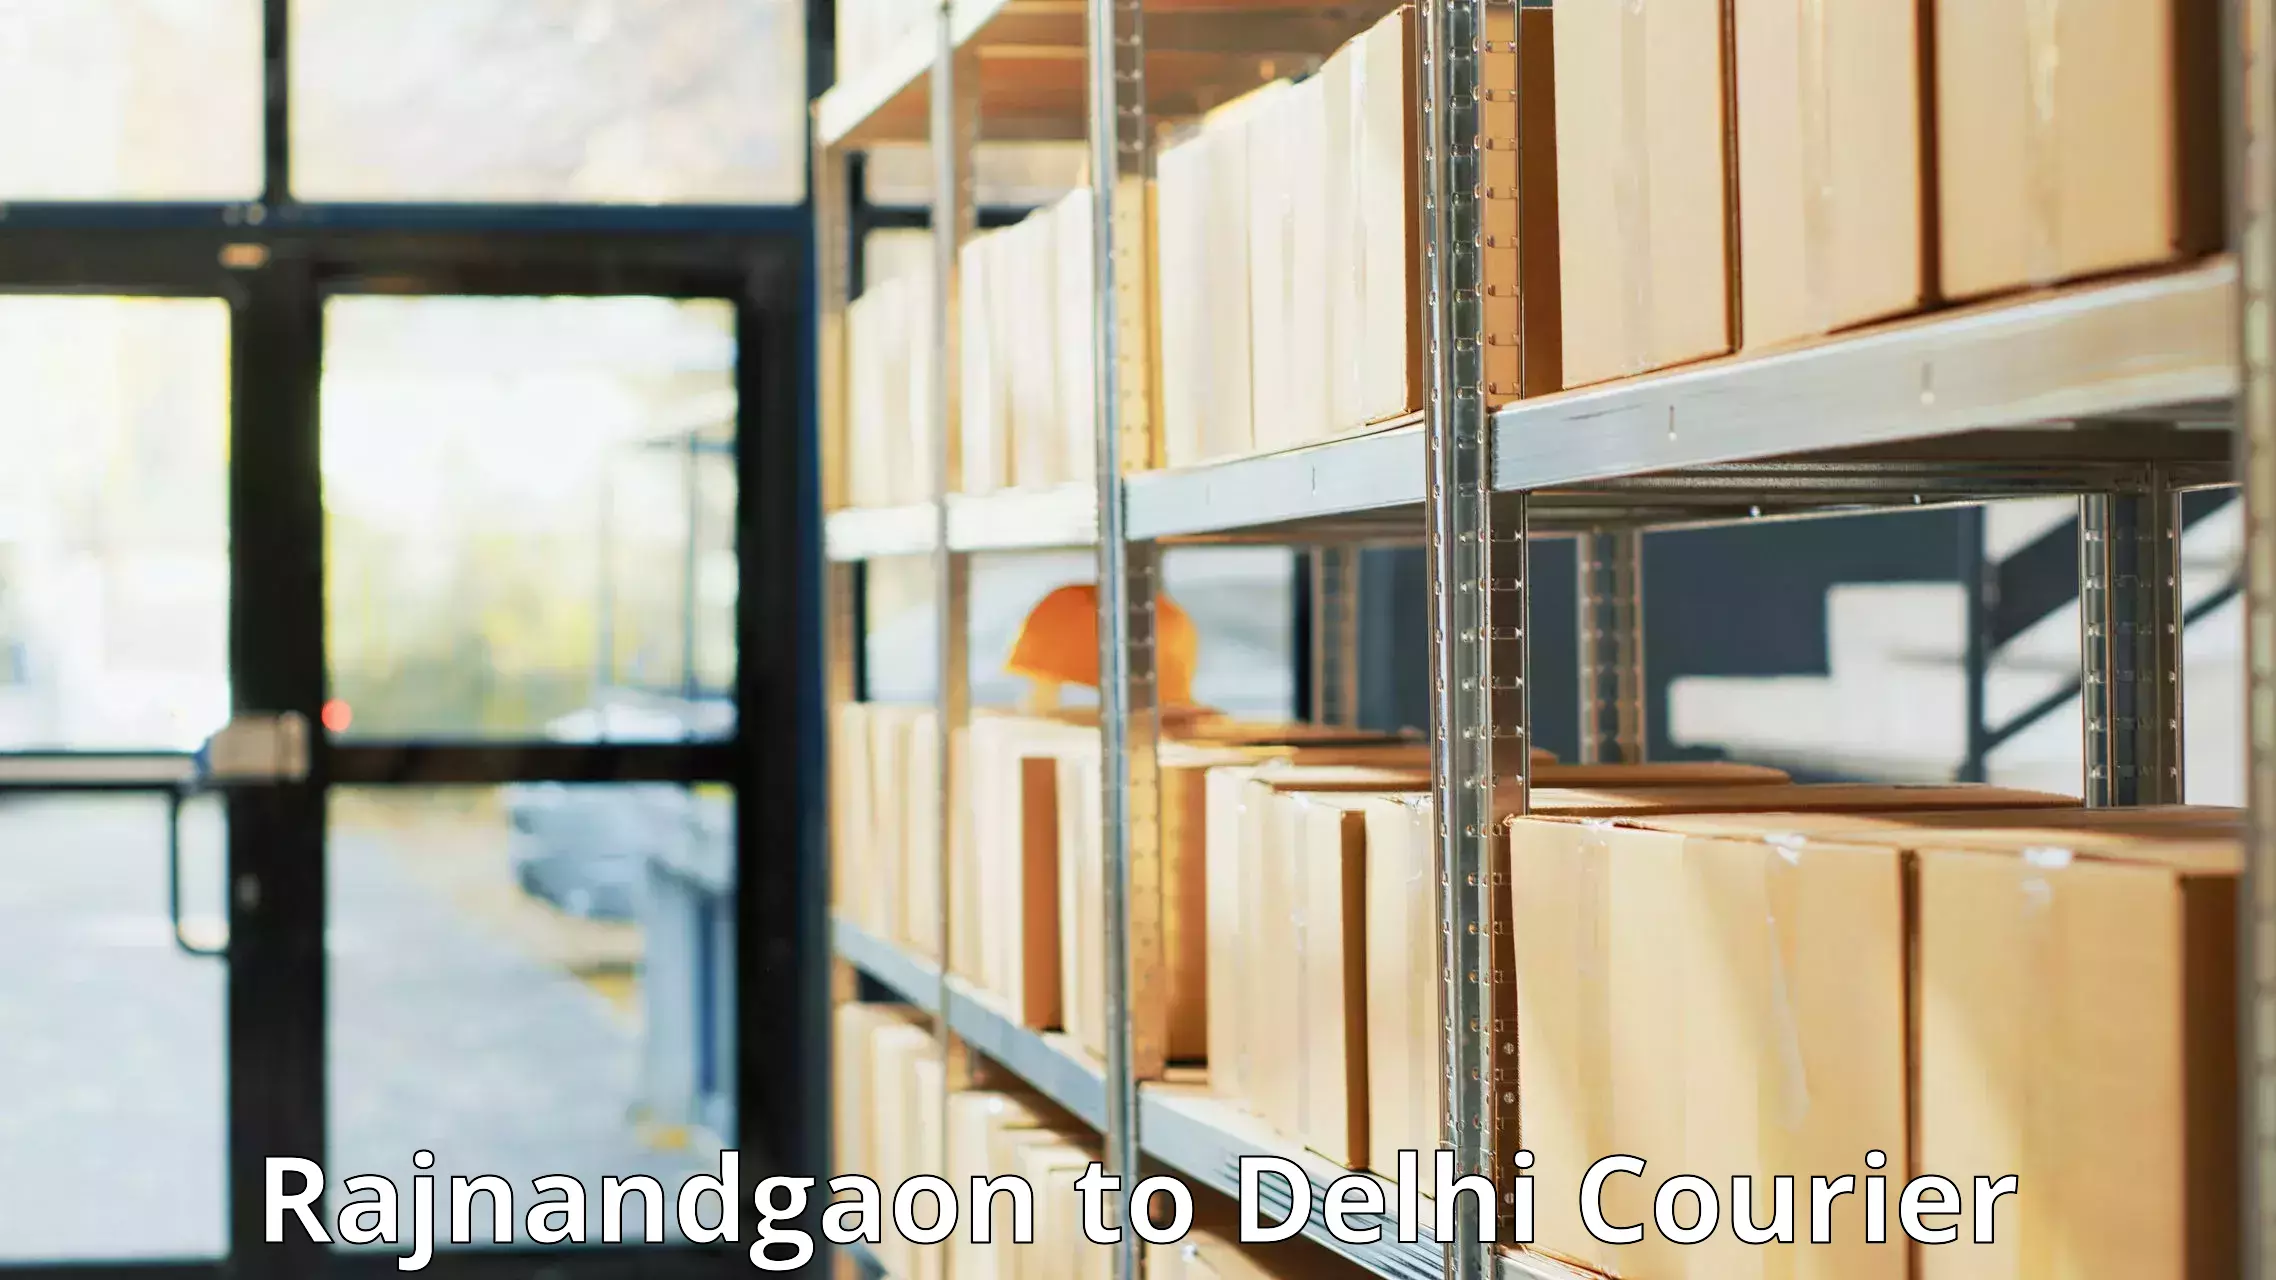 Pharmaceutical courier Rajnandgaon to IIT Delhi